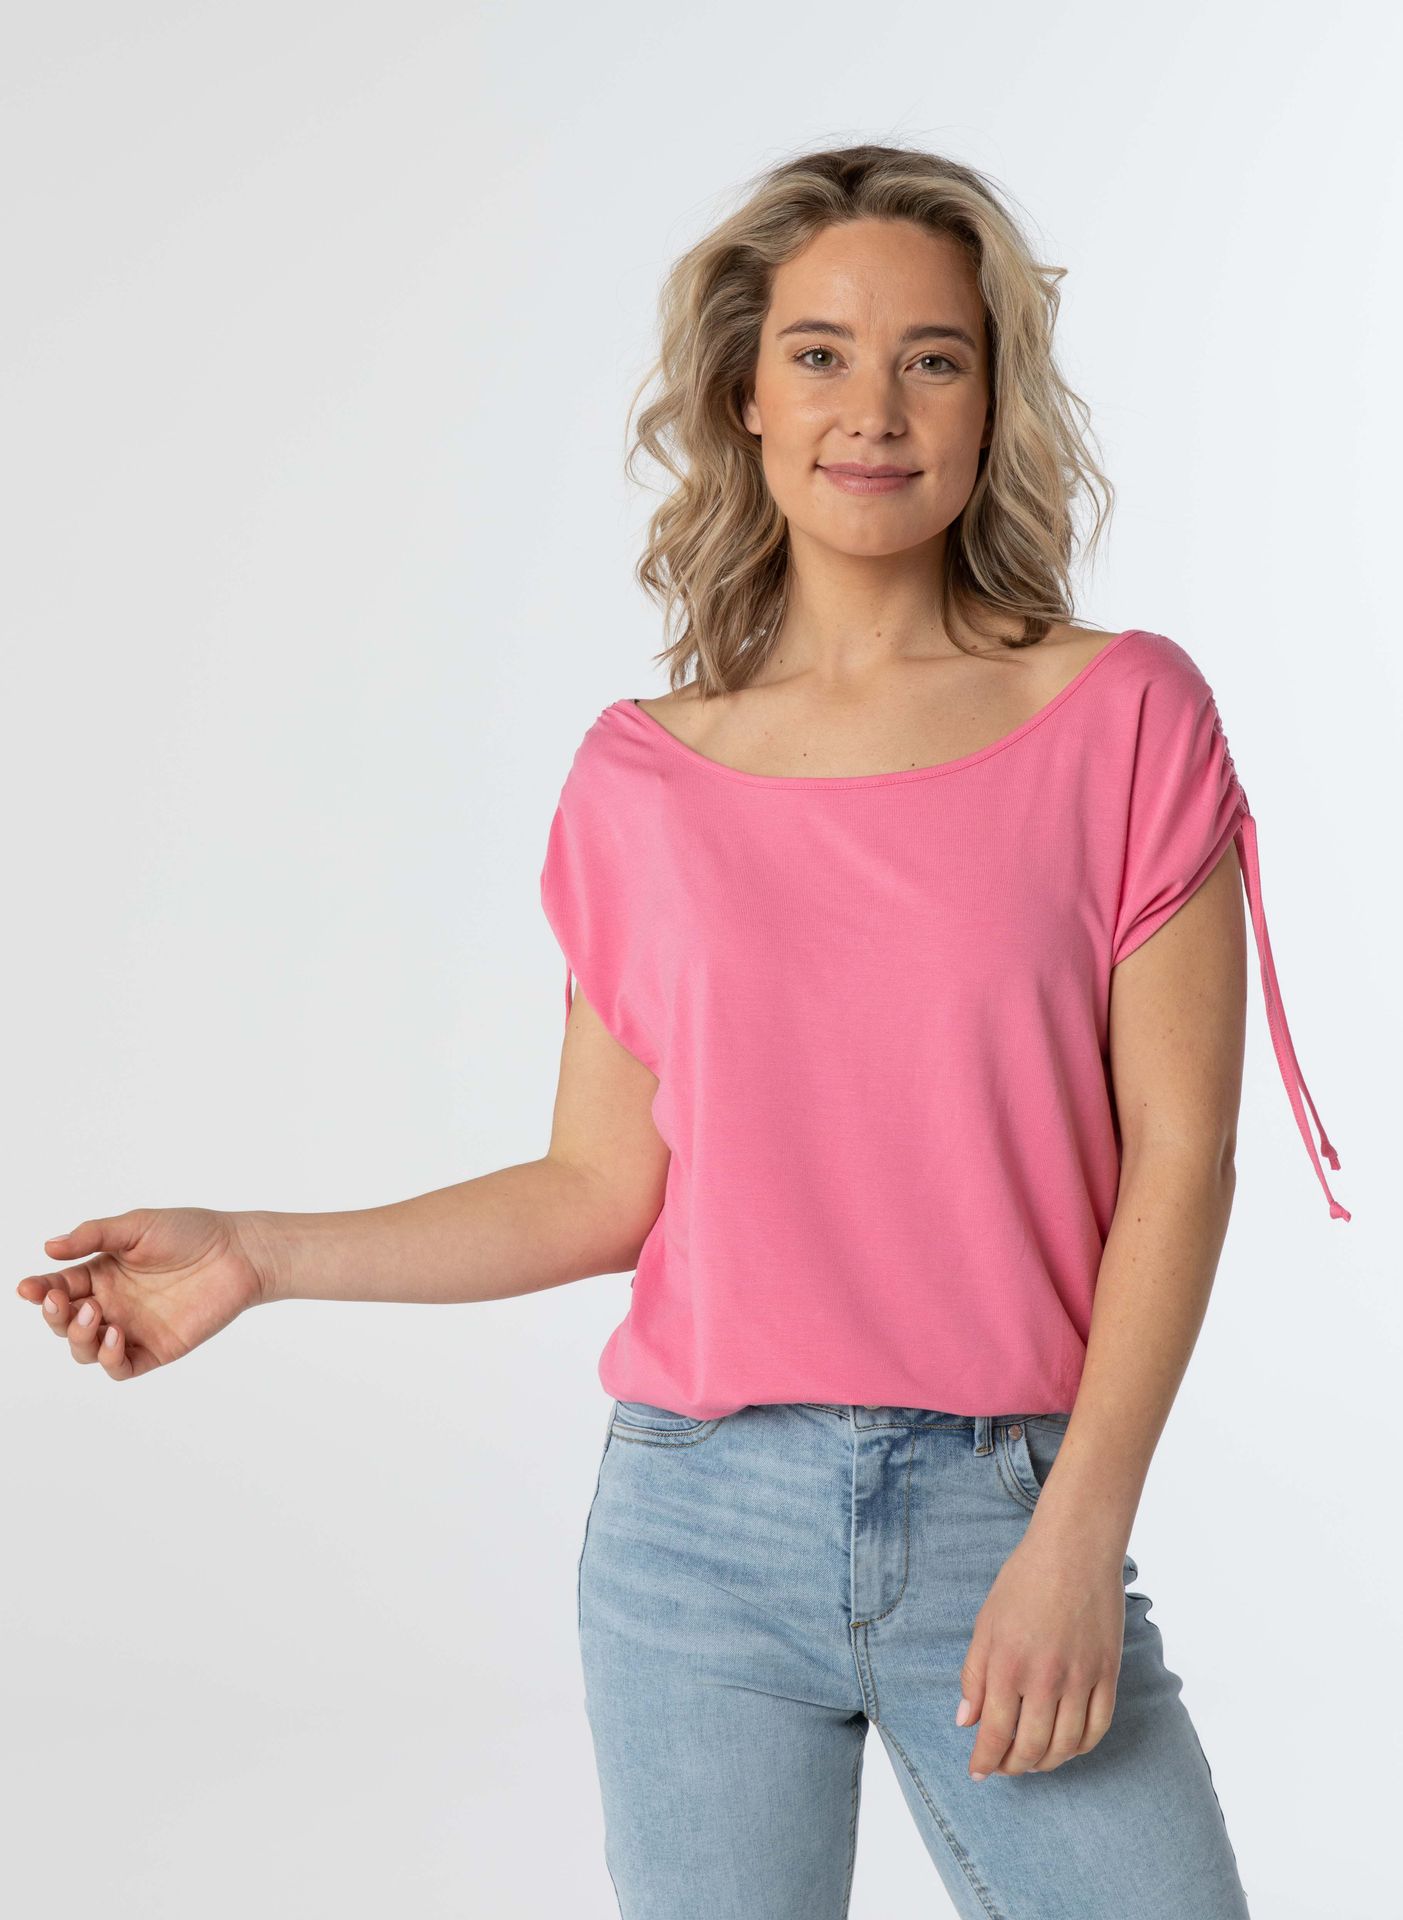 Norah Shirt roze pink 209997-900